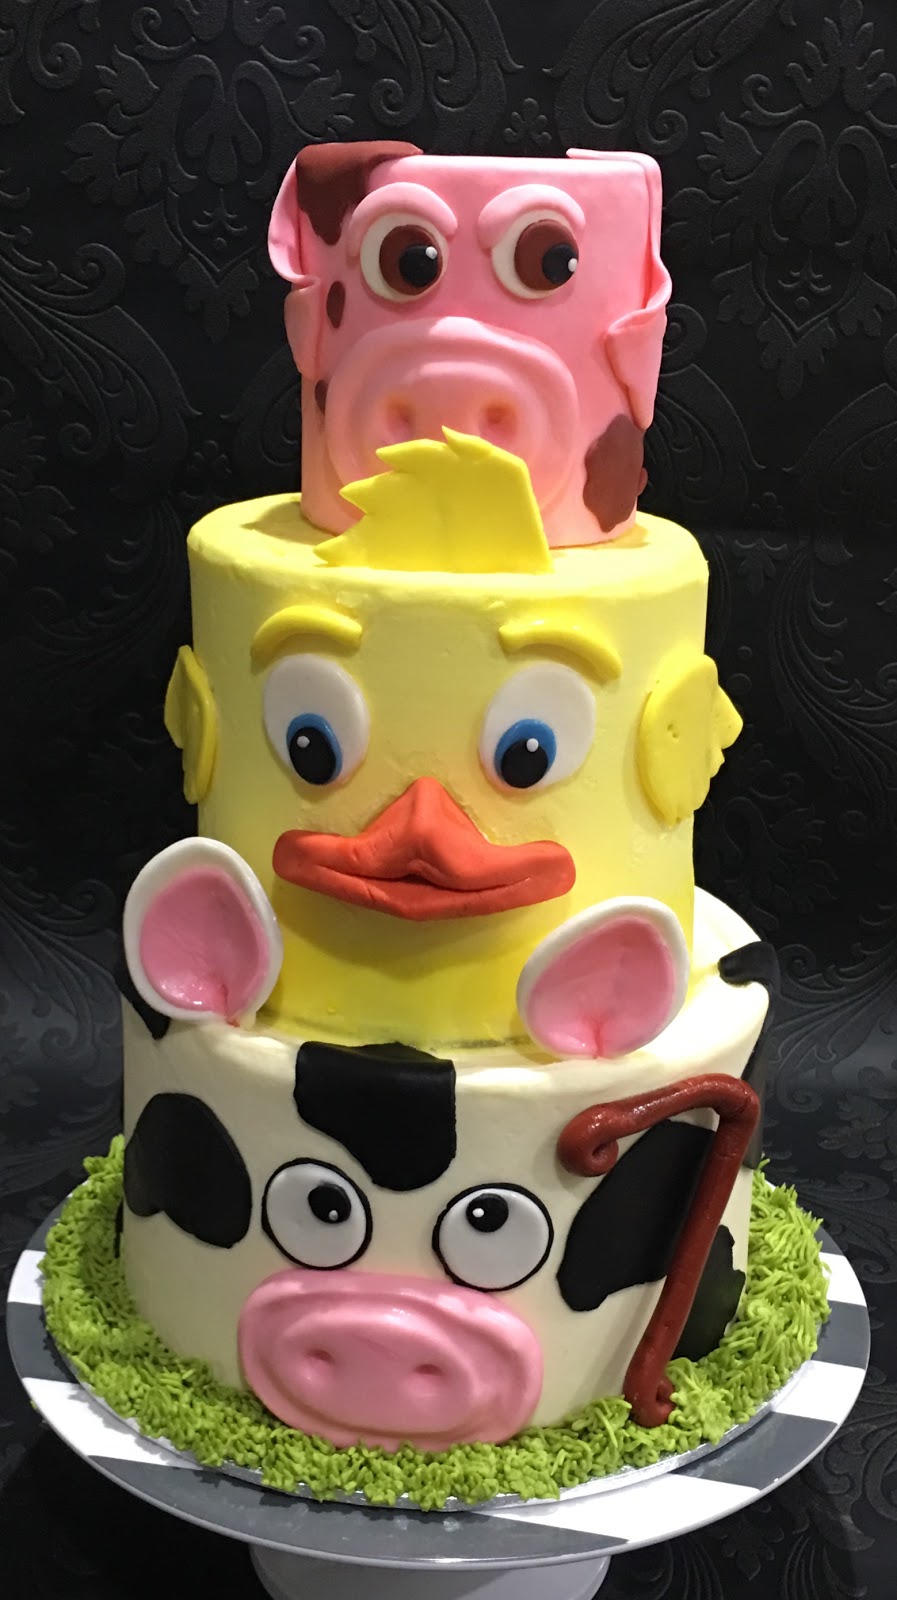 Spot on Cakes - Home Bakery ( egg & eggless cakes) | bakery | Portsmouth Circuit, Jordan Springs NSW 2747, Australia | 0470498428 OR +61 470 498 428